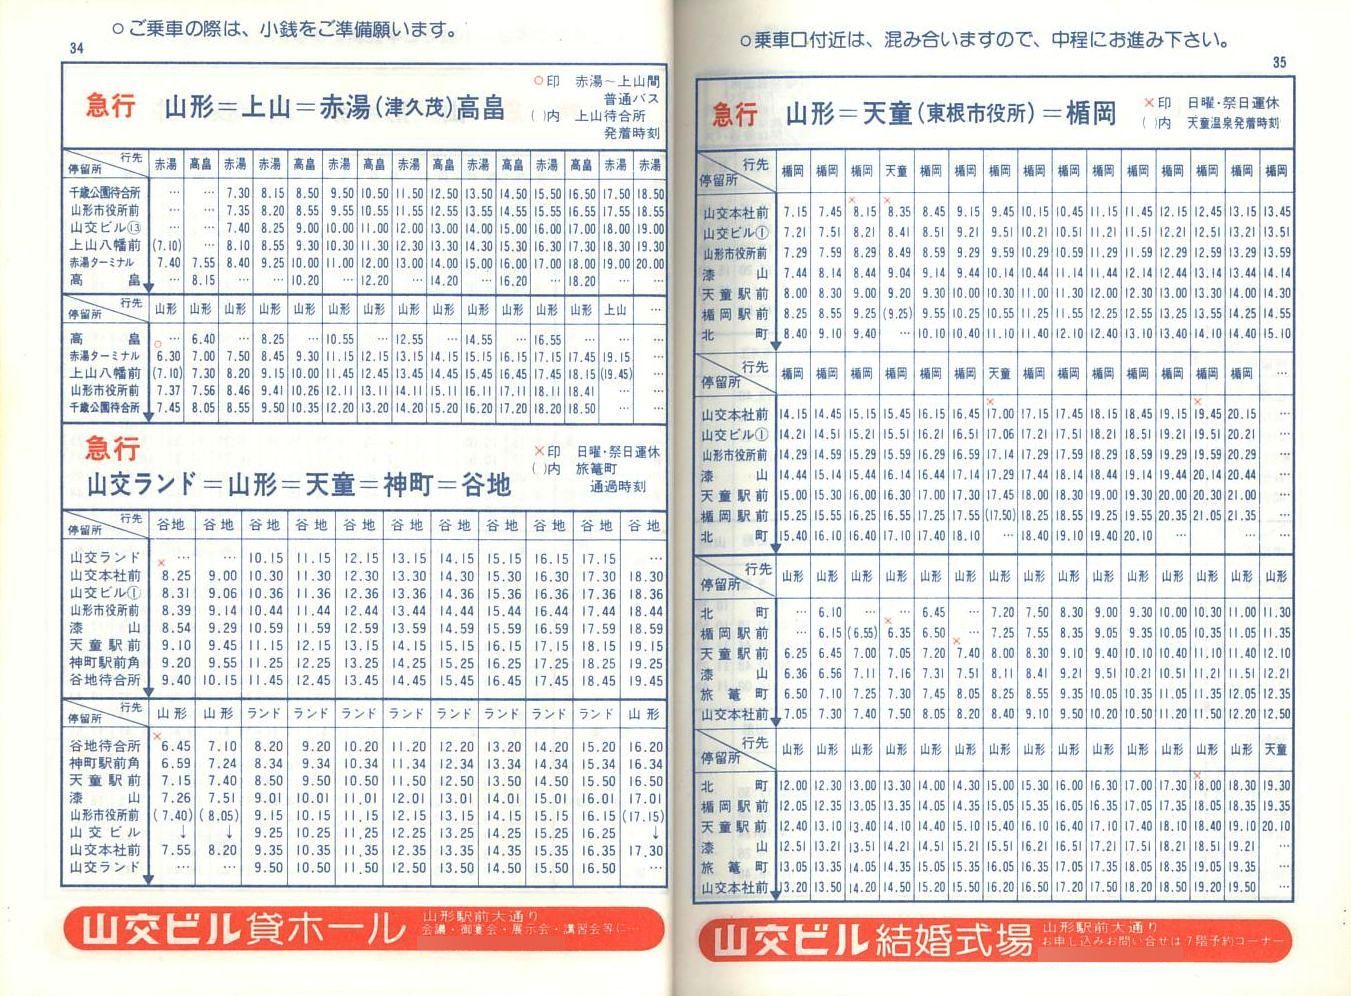 1978-04-01改正_山形交通_冊子時刻表_34-35